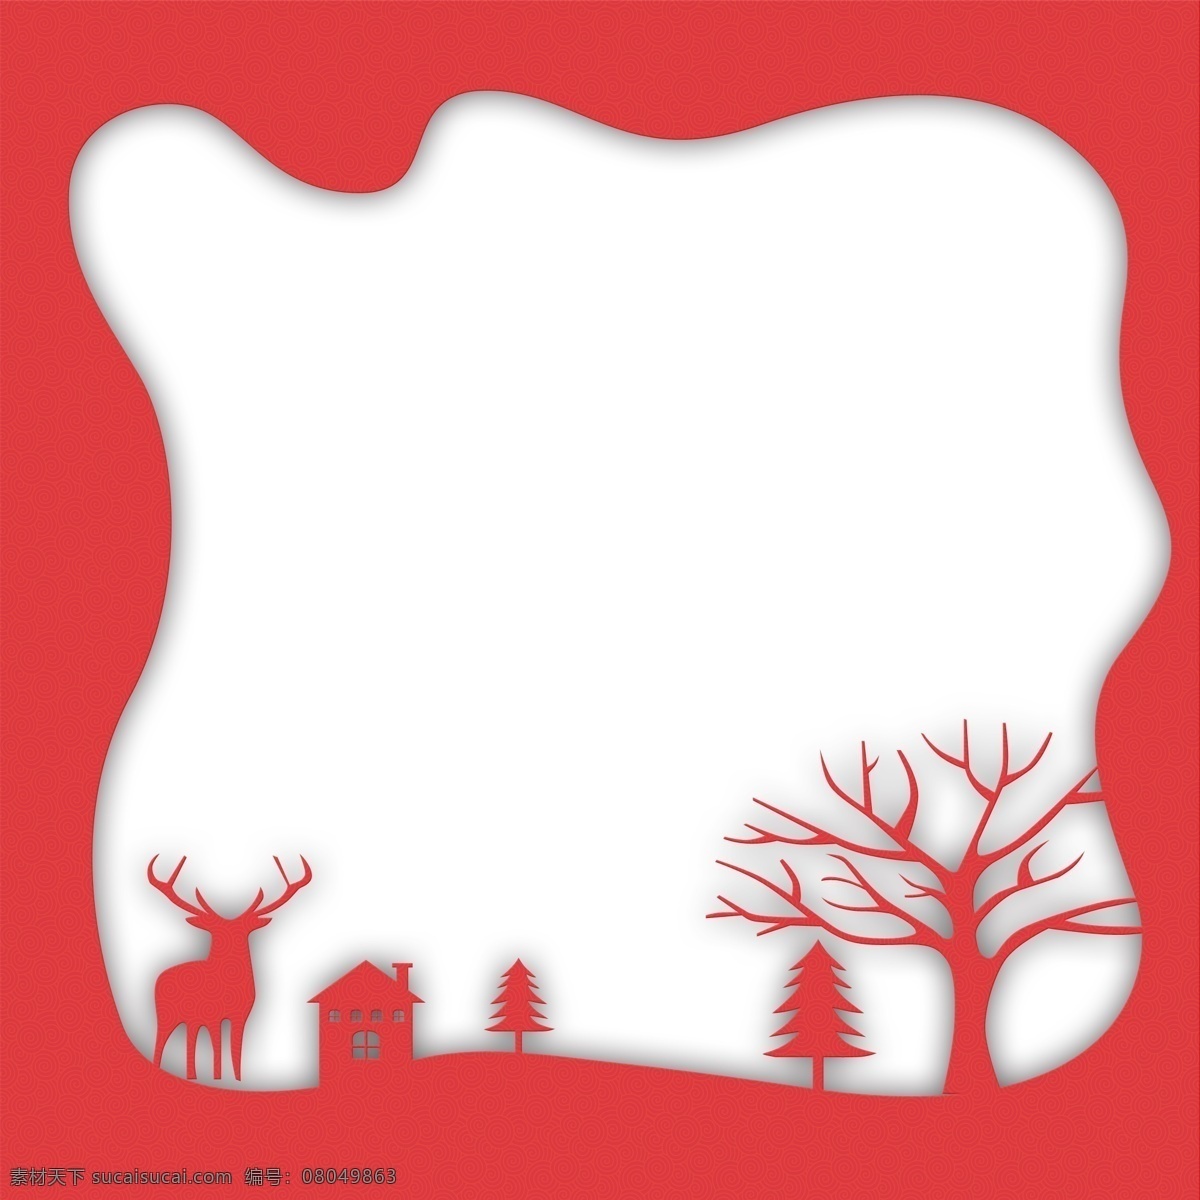 红色 喜庆 剪纸 边框 元素 庆祝 纹理 植物 大树 装饰 麋鹿 动物 房屋 建筑